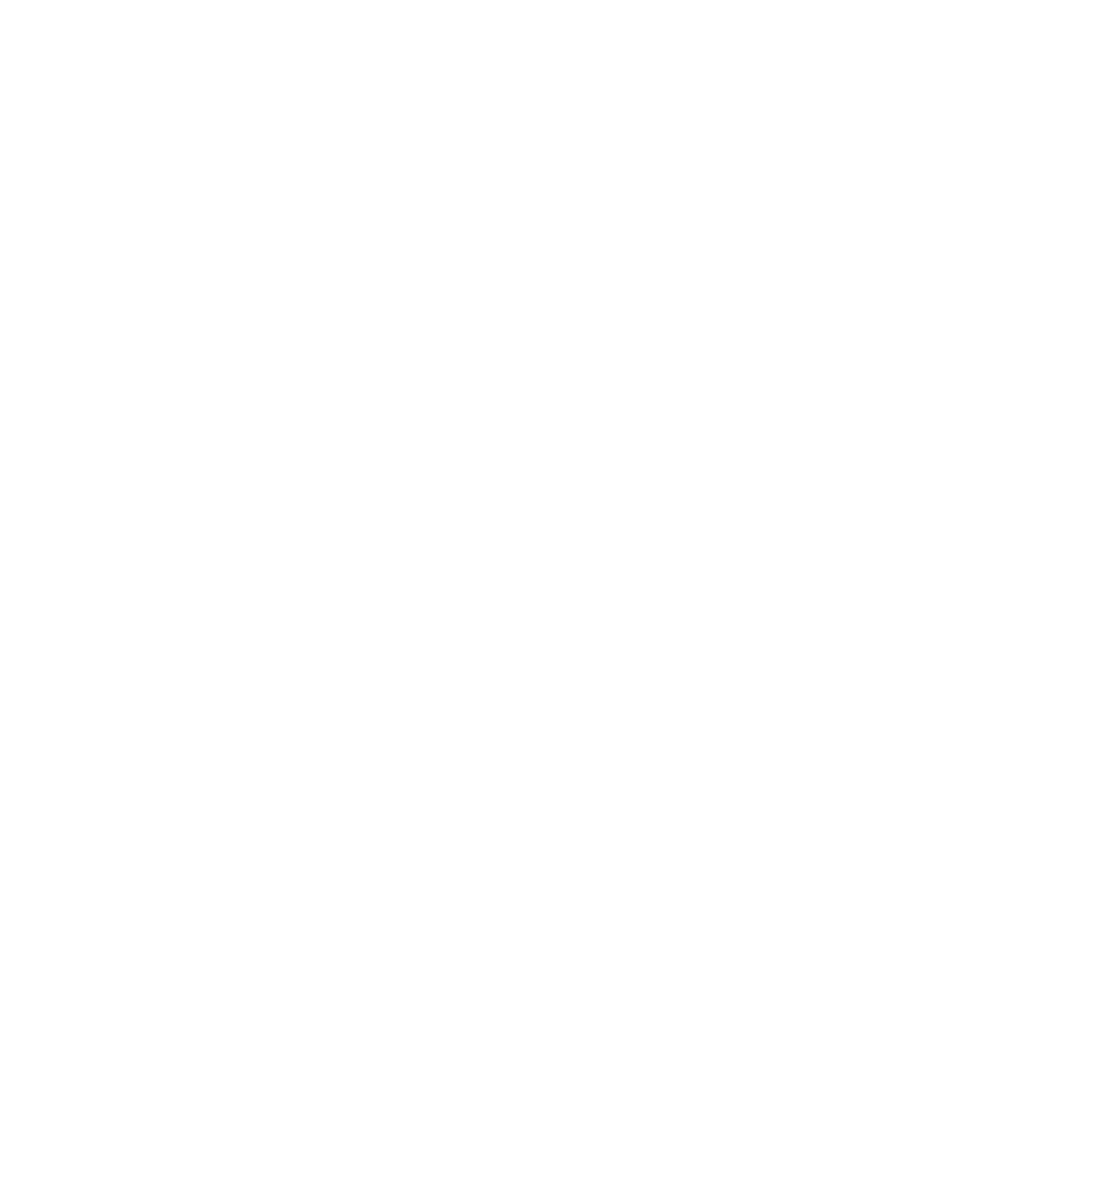 кондитерская Яхонт Иркутск торт на 23 февраля для мужчин Торт Choco (Чоко) Шифоновый шоколадный бисквит пропитан абрикосовым джемом и прослоен шоколадным кремом, покрыт торт шоколадной глазурью